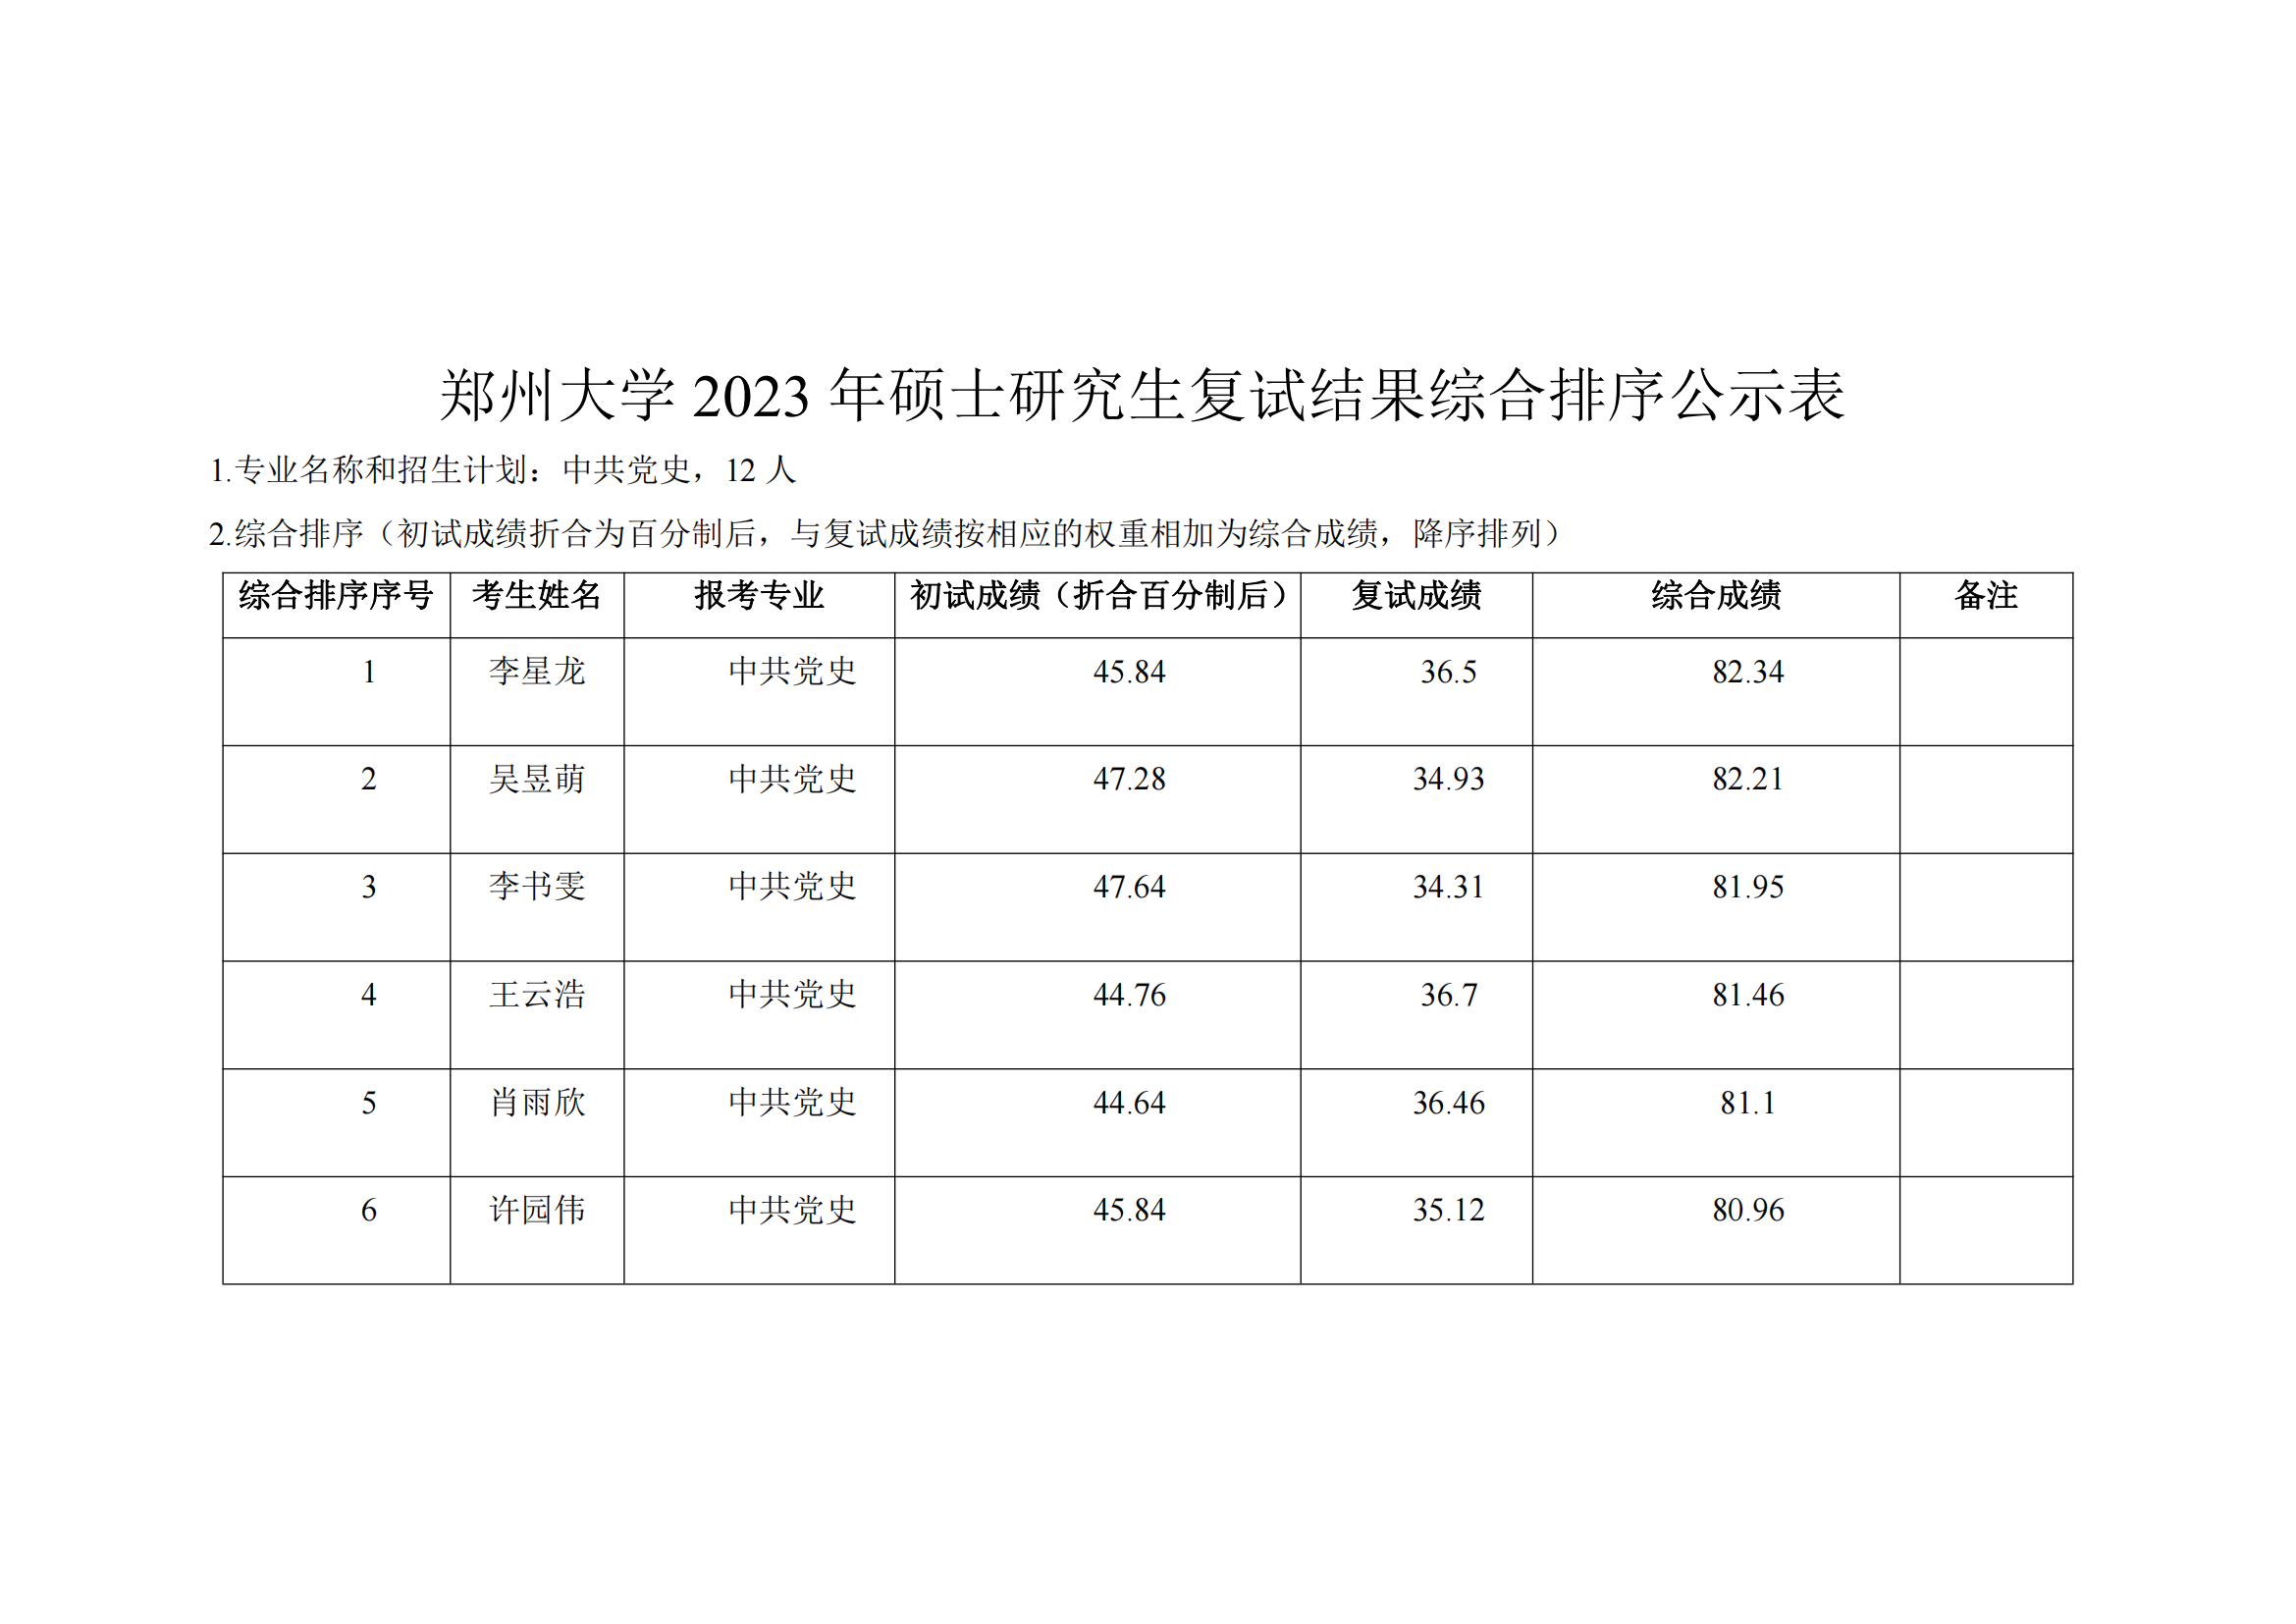 郑州大学马克思主义学院2023年硕士研究生复试结果综合排序公示表_01.png